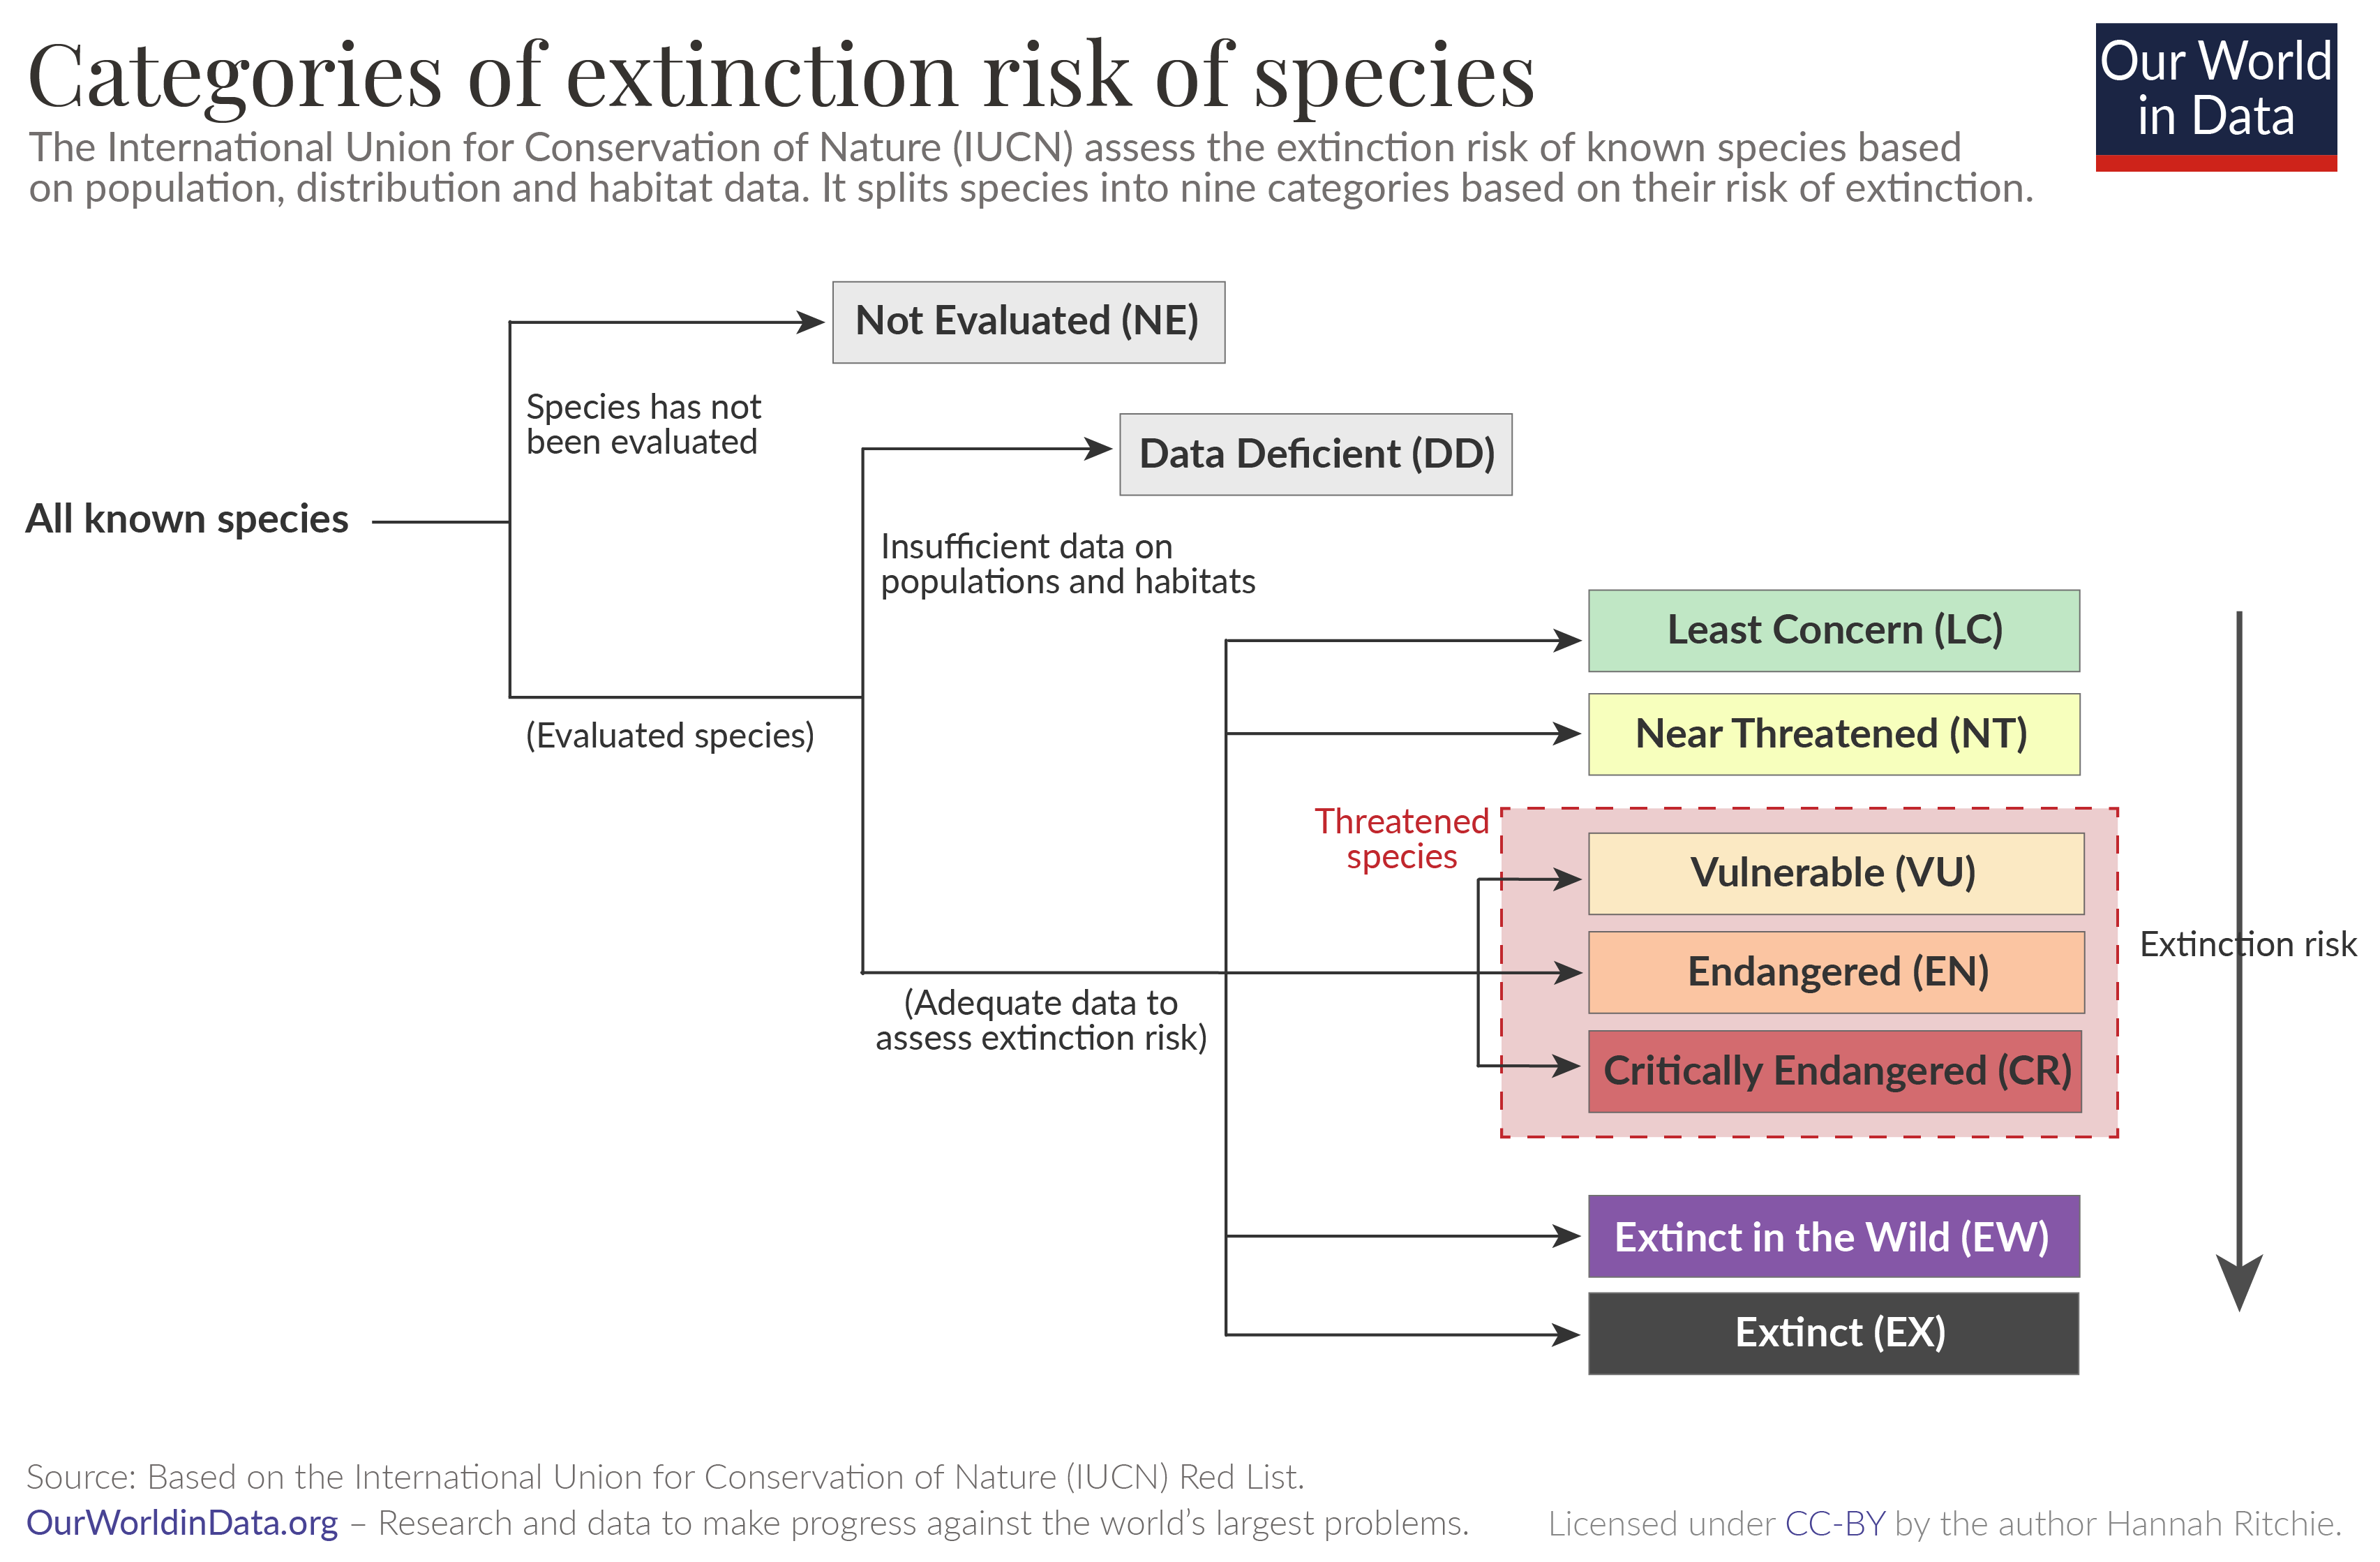 Iucn red list extinction categories 01